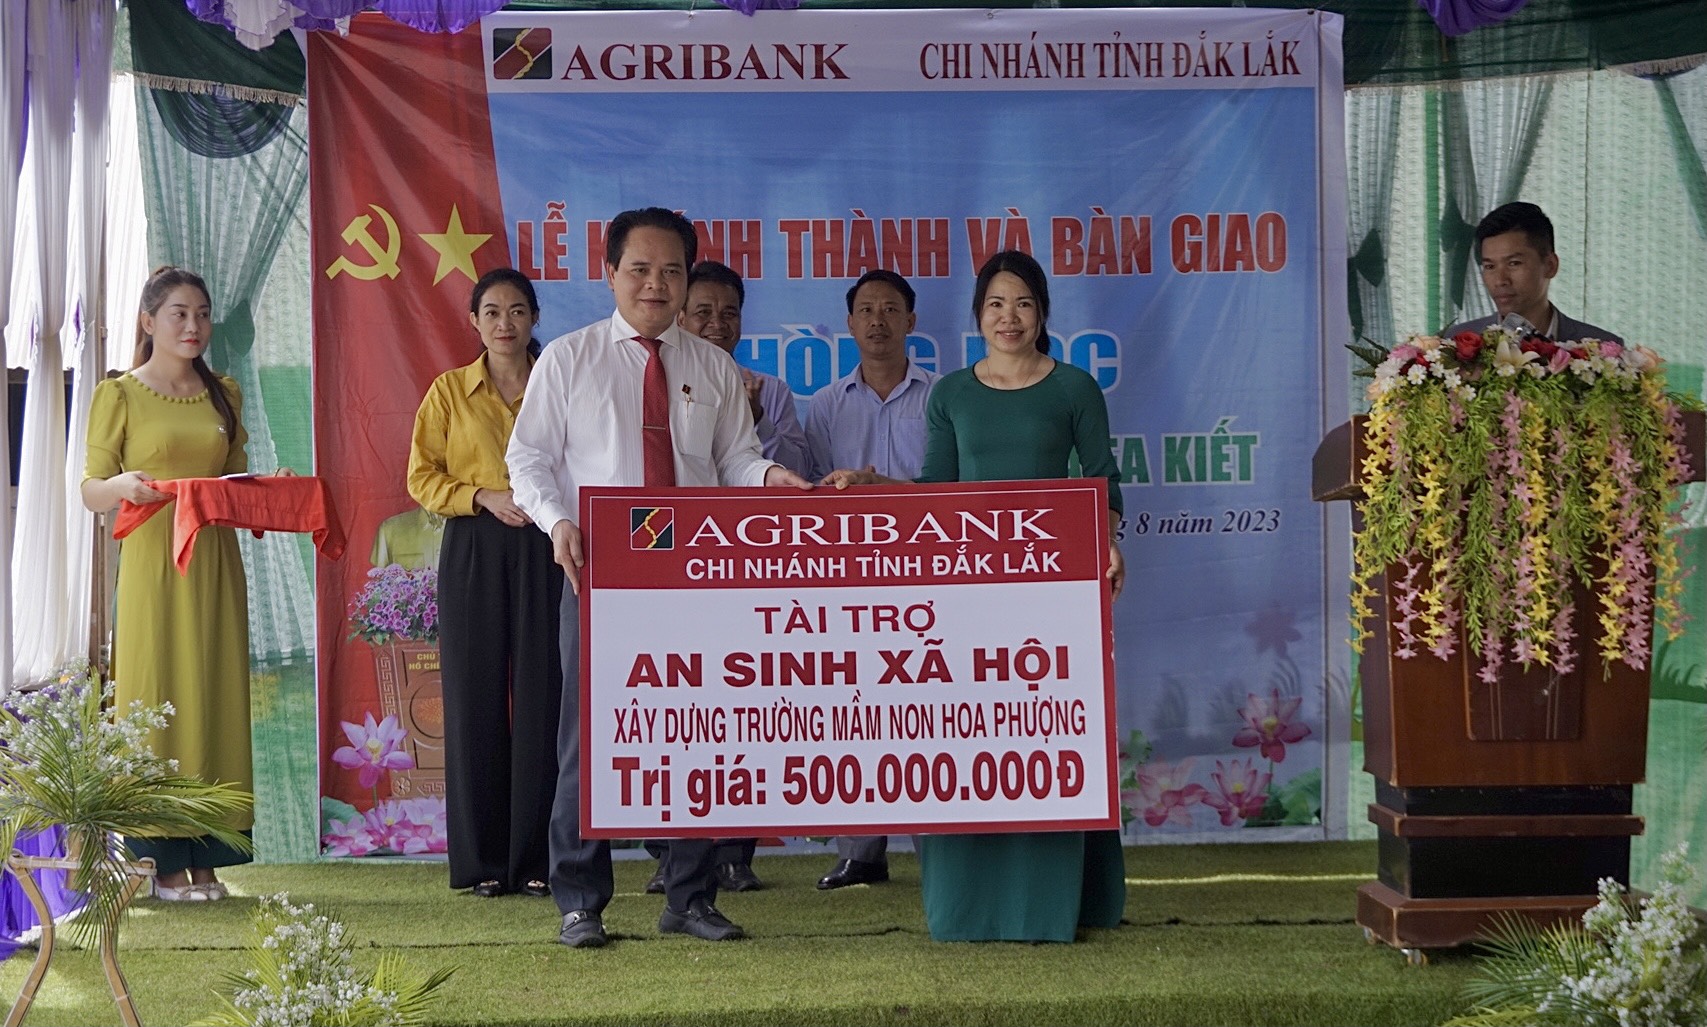 Agribank tỉnh Đắk Lắk bàn giao phòng học trị giá 500 triệu đồng tại xã Ea Kiết  - Ảnh 1.